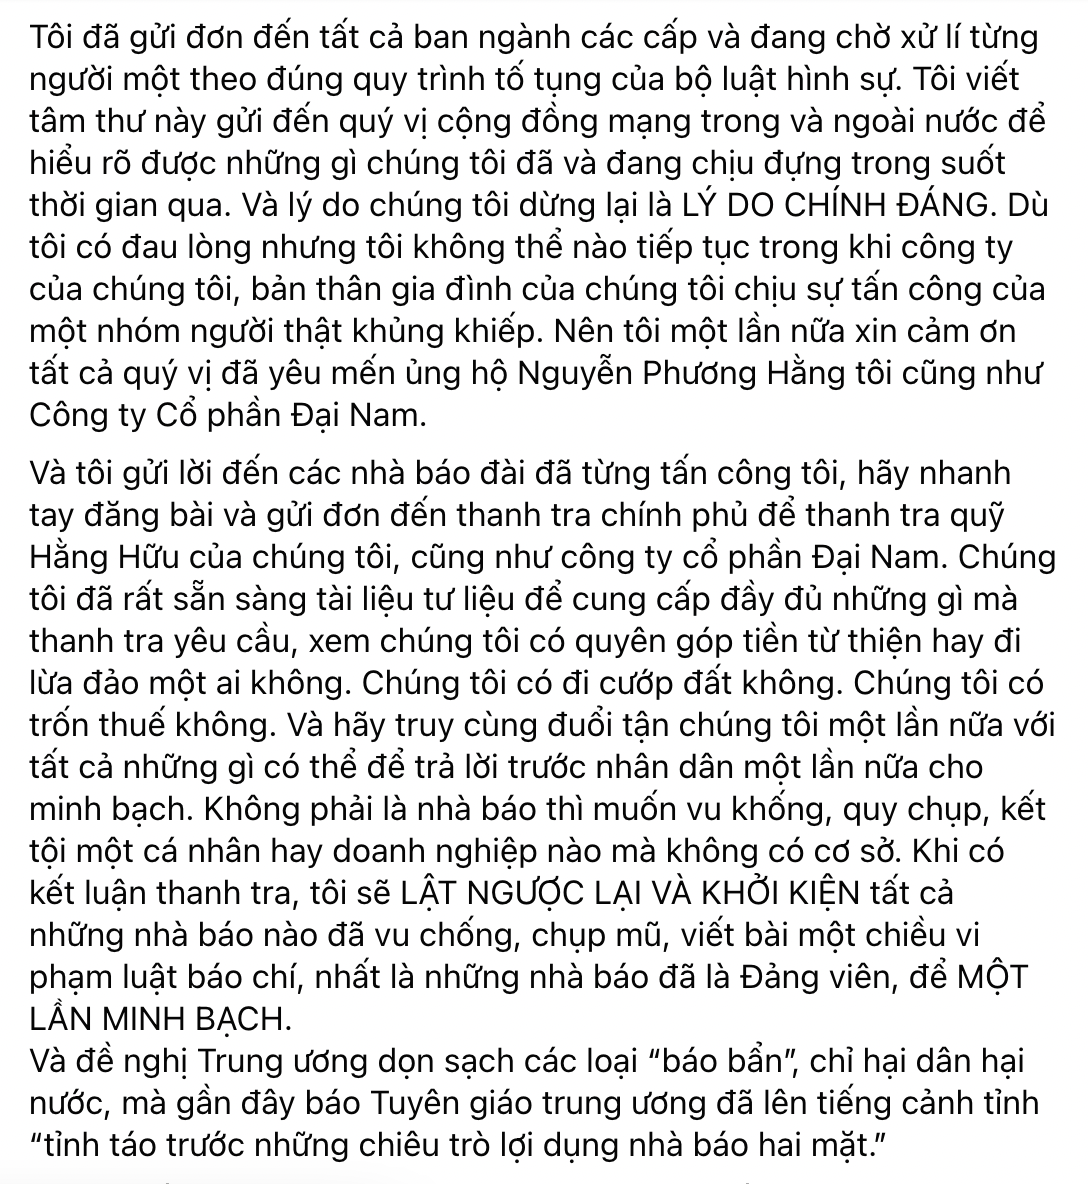 NÓNG: Bà Phương Hằng tuyên bố chính thức đóng quỹ mổ tim Hằng Hữu, triển khai sao kê theo lời Hàn Ni - Hình 8